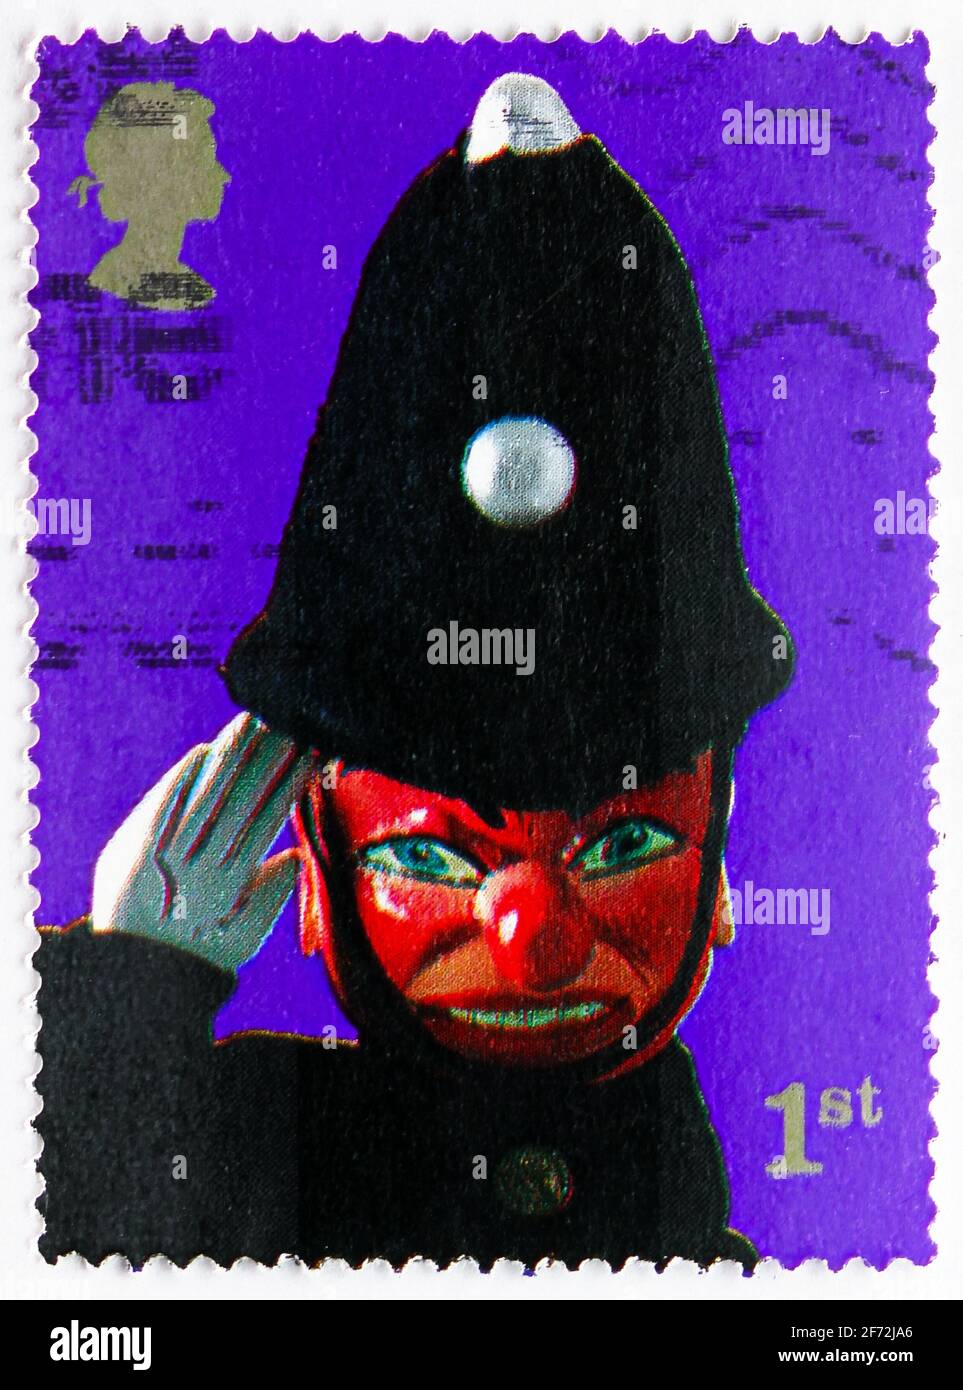 MOSCOU, RUSSIE - 22 DÉCEMBRE 2020: Timbre-poste imprimé au Royaume-Uni montre policier, Punch et Judy Show Puppets série, vers 2001 Banque D'Images